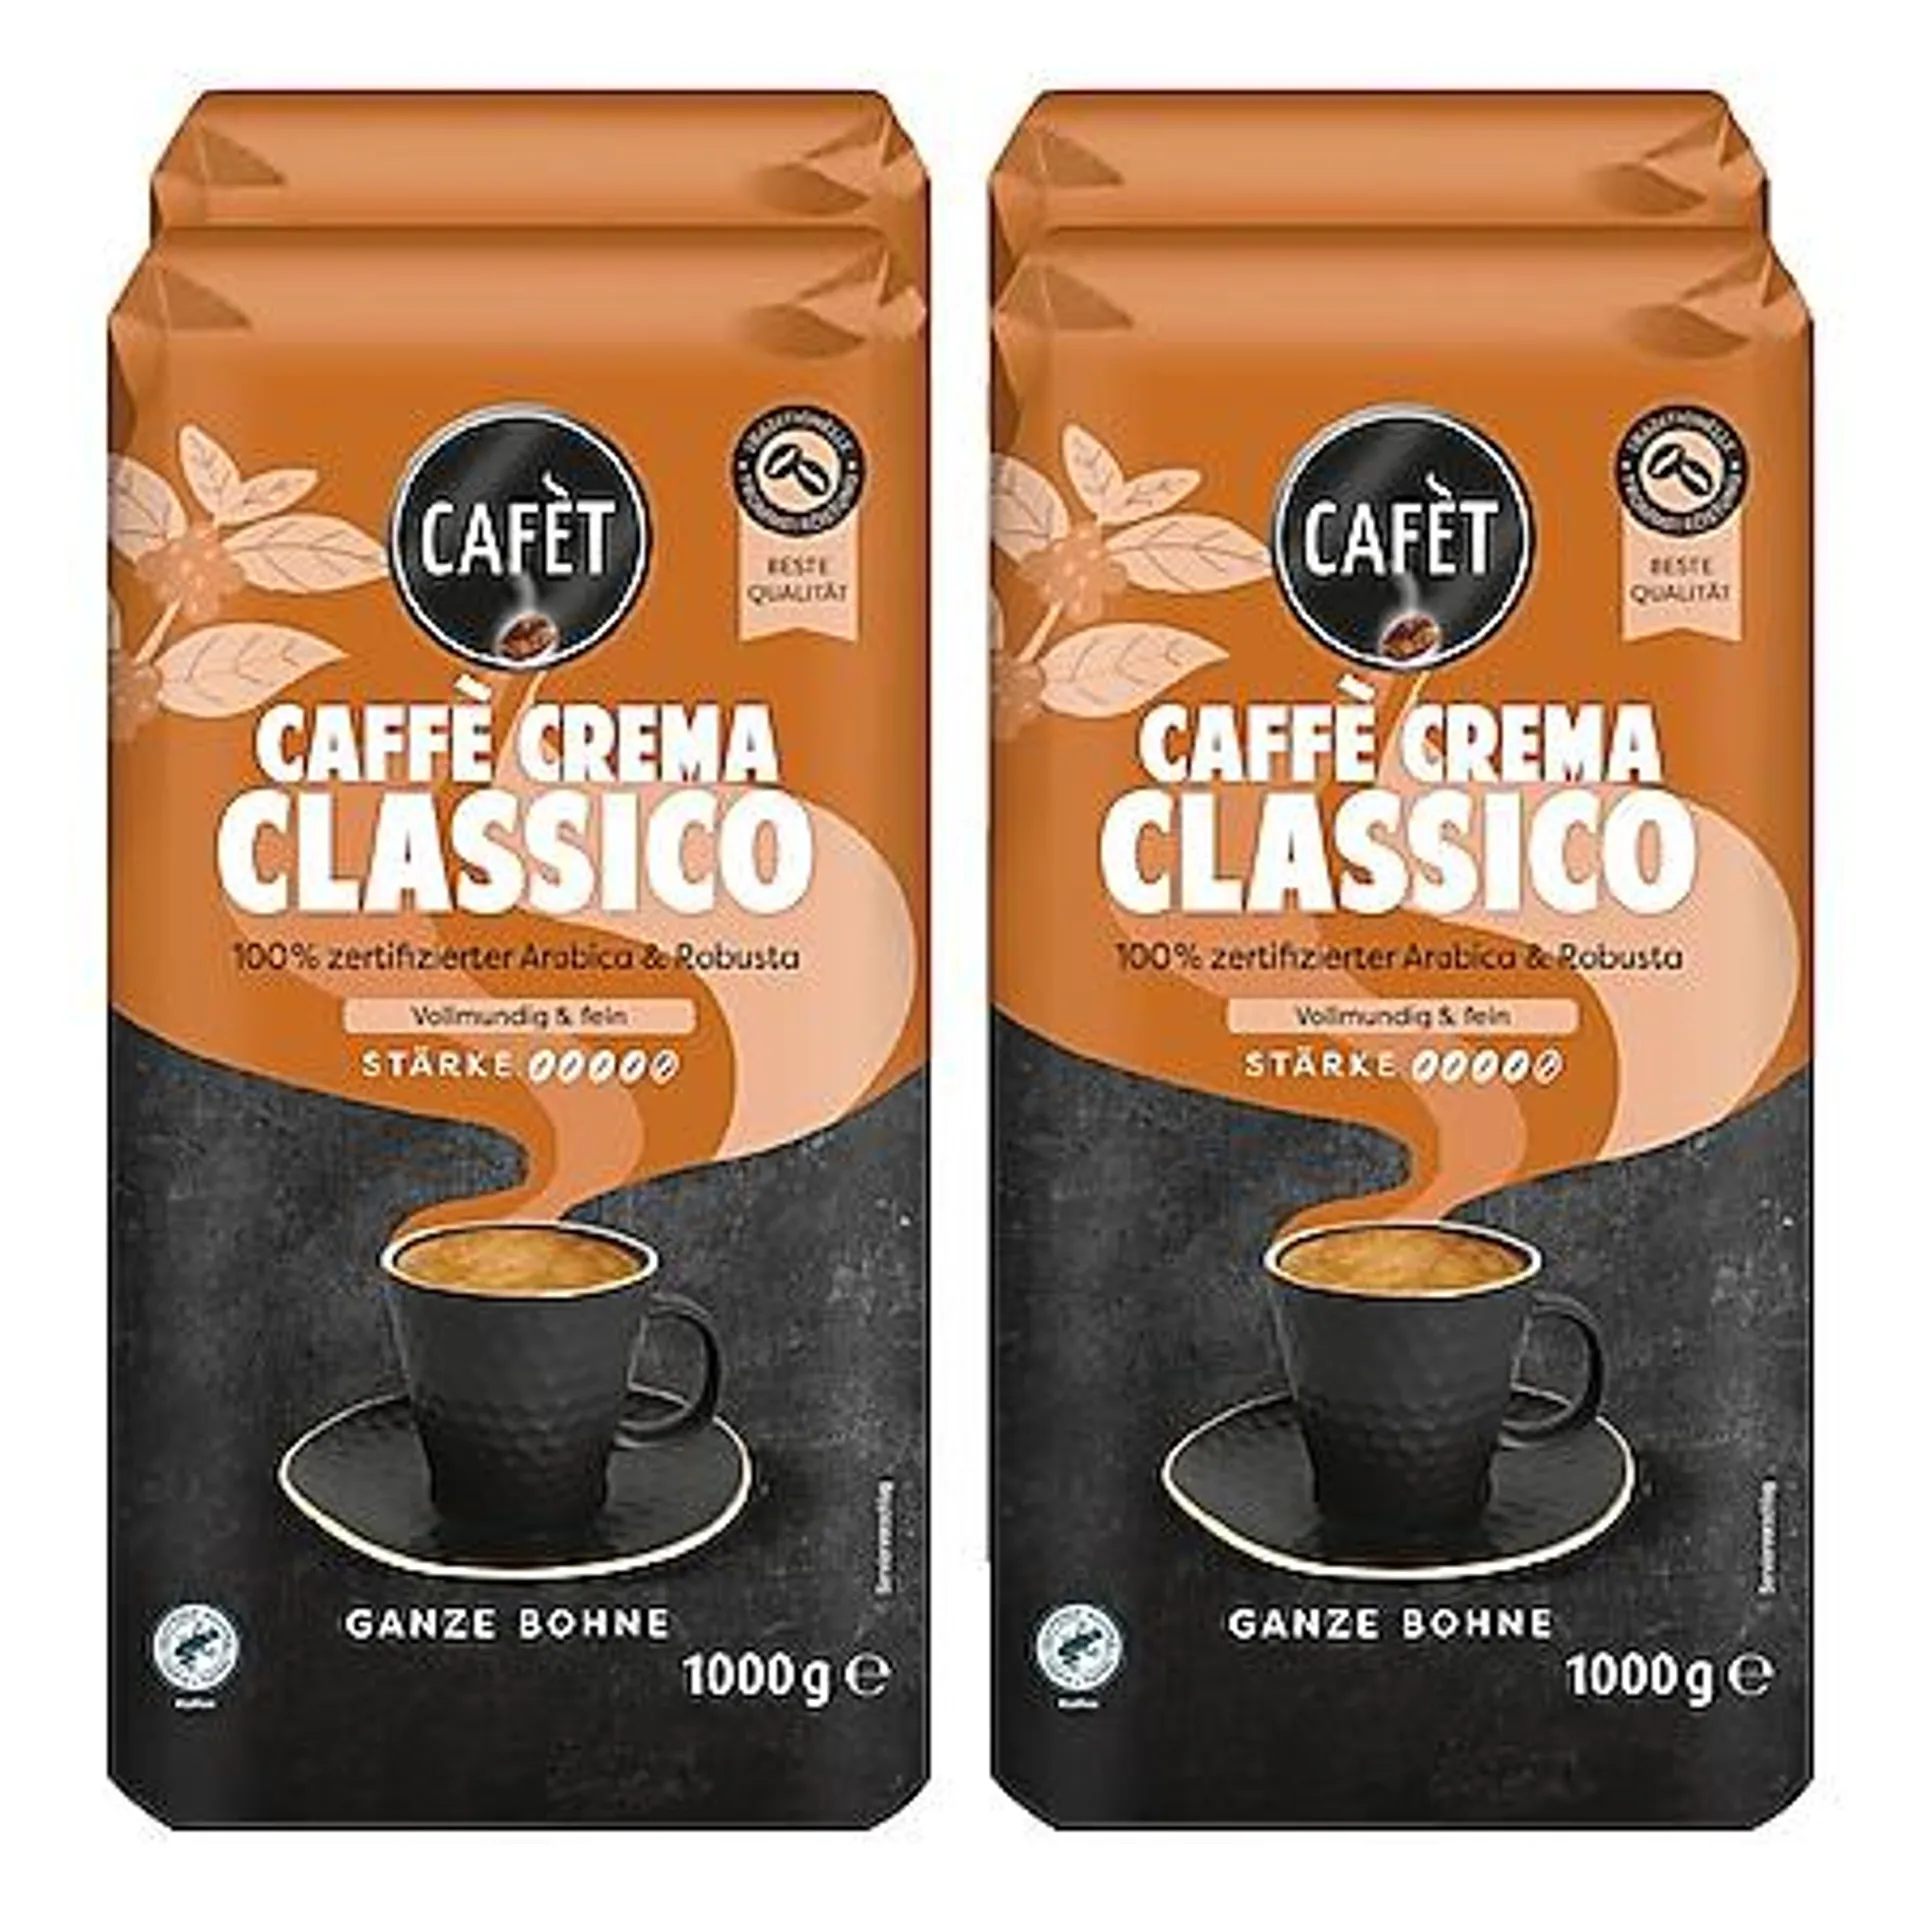 Cafet Cafe Crema Ganze Bohne 1 kg, 4er Pack